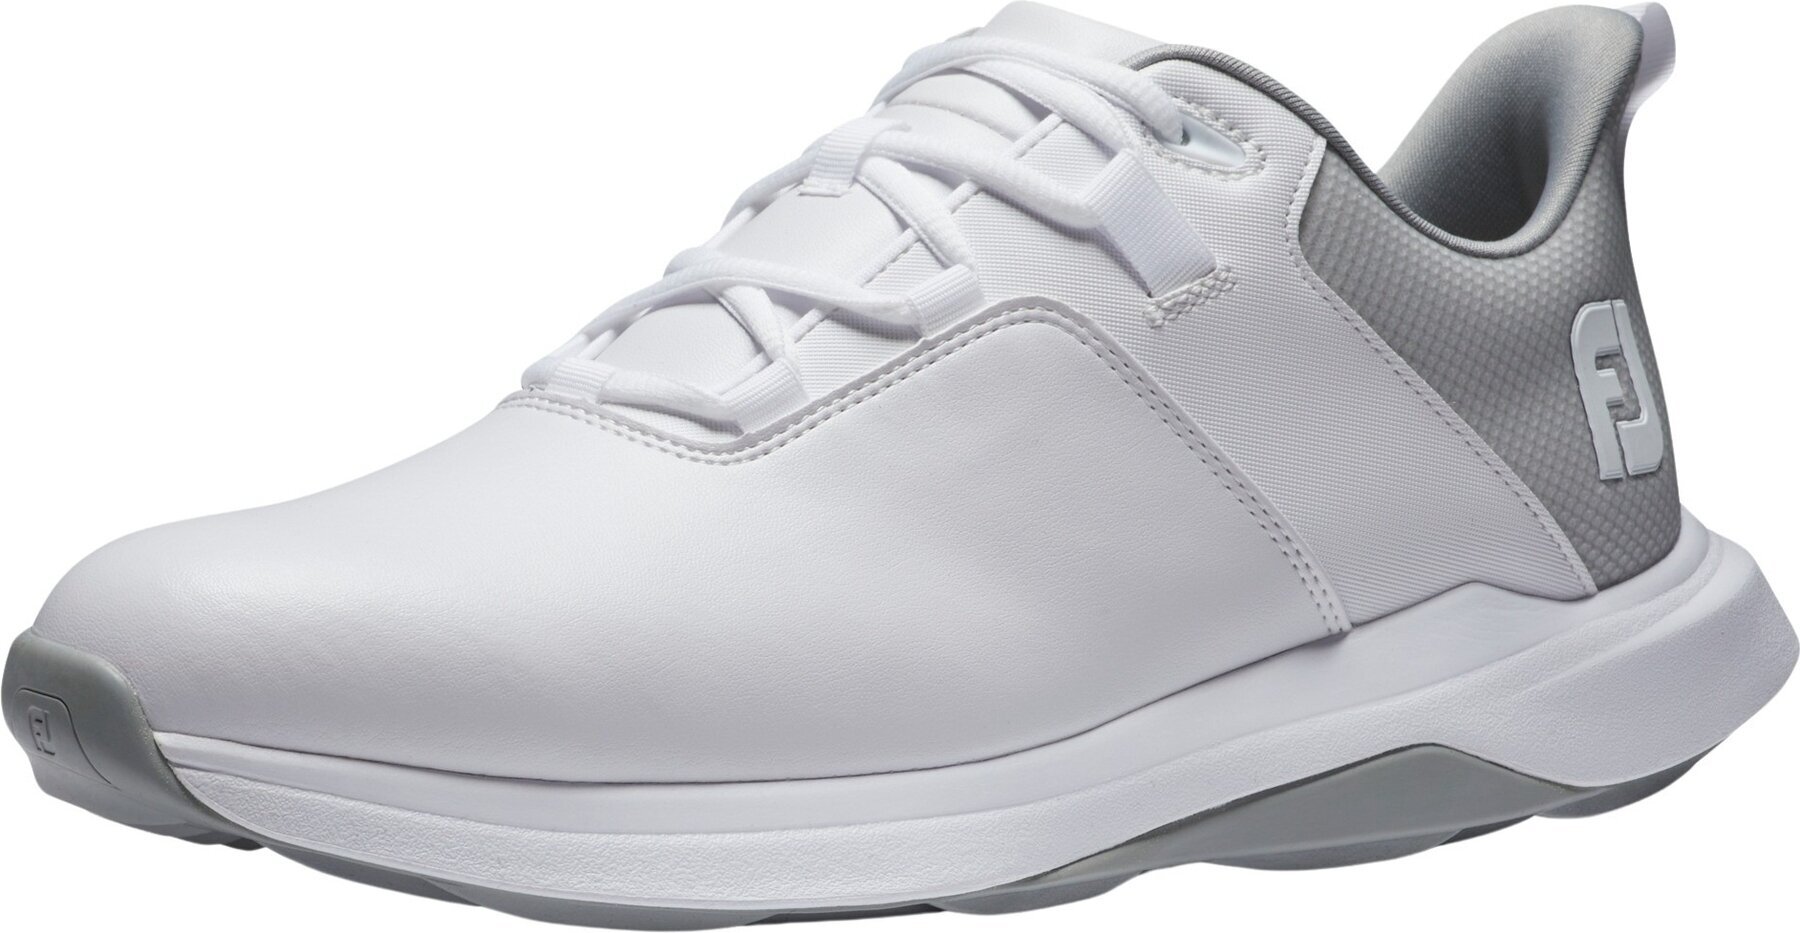 Chaussures de golf pour hommes Footjoy ProLite Mens Golf Shoes White/Grey 47